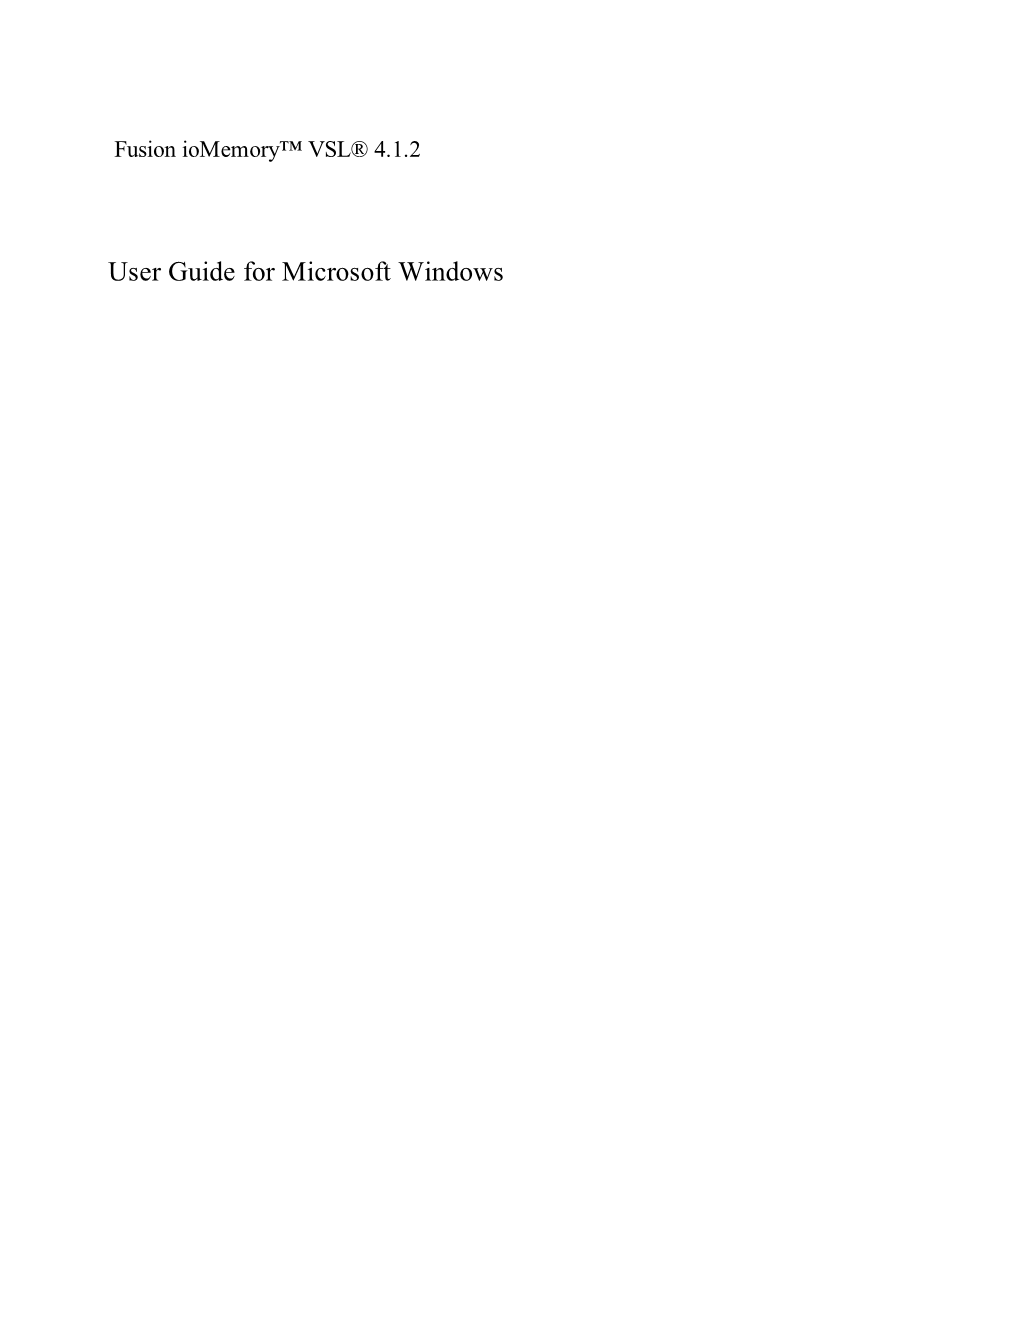 IBM Iomemory VSL User Guide for Microsoft Windows